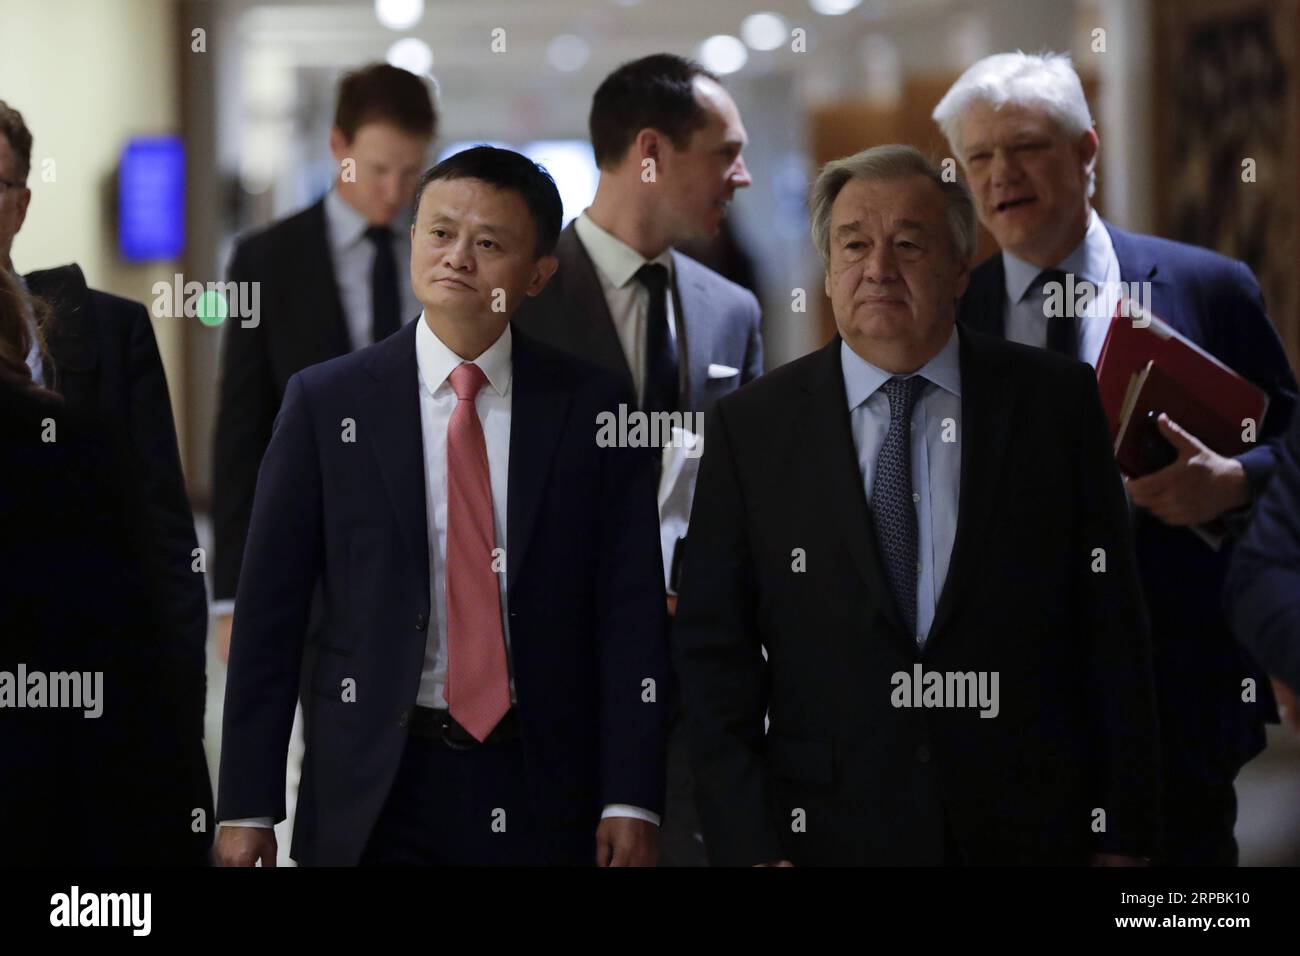 (190610) -- NAZIONI UNITE, 10 giugno 2019 -- Jack ma (L, front) del gruppo Alibaba cinese e del Segretario generale delle Nazioni Unite Antonio Guterres (R, front) arrivano per partecipare a un panel di alto livello sulla cooperazione digitale presso la sede delle Nazioni Unite a New York, il 10 giugno 2019. Jack ma del gruppo cinese Alibaba si è Unito al Segretario generale delle Nazioni Unite Antonio Guterres e Melinda Gates della Fondazione Gates in una conversazione dal vivo qui lunedì per discutere della cooperazione digitale globale per un futuro più sicuro e sostenibile dell'industria digitale. ) COOPERAZIONE UN-CHINA-JACK MA-DIGITALE LIXMUZI PUBLICATIONXNOTX Foto Stock